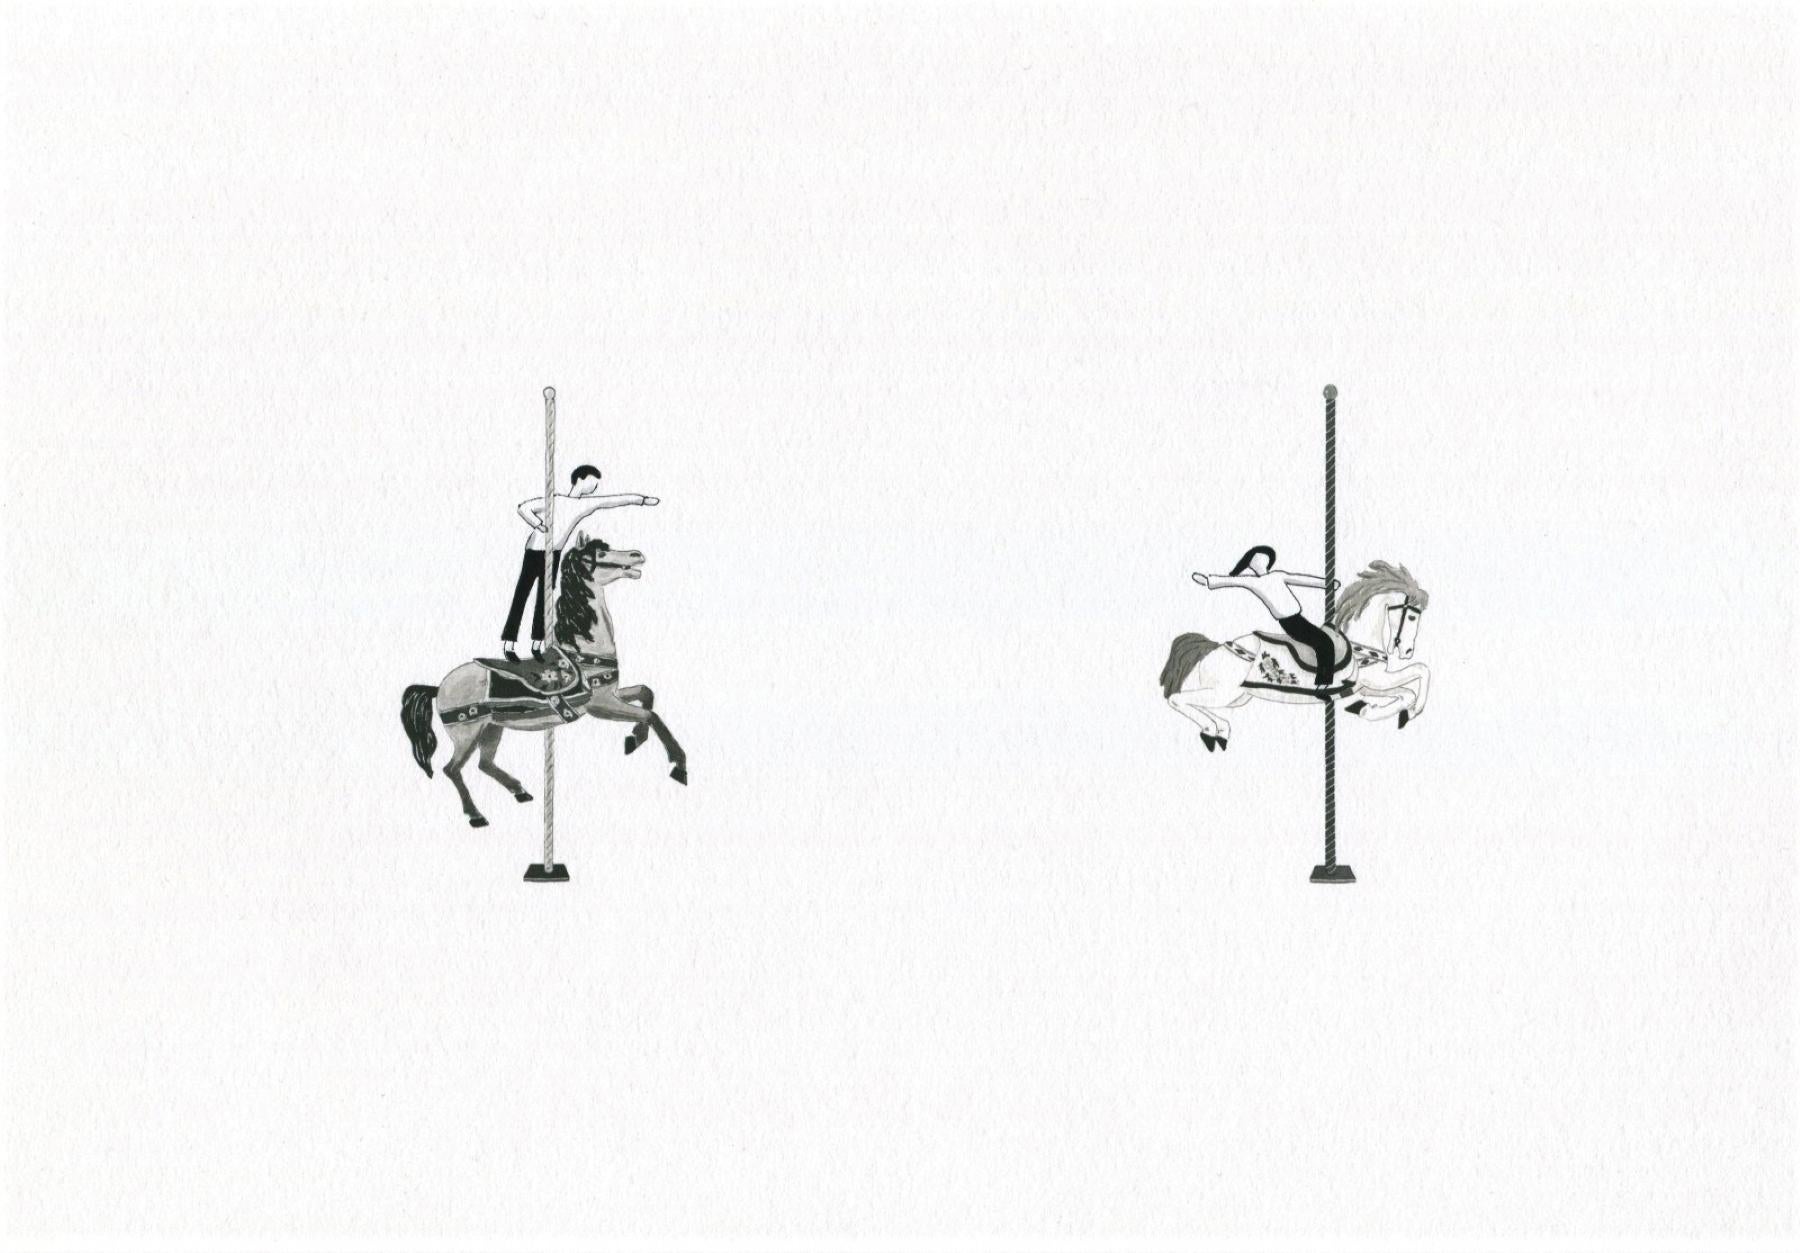 Archivdruck ""Merry-go-round" auf Papier Paar Beziehung Liebe Minimalismus